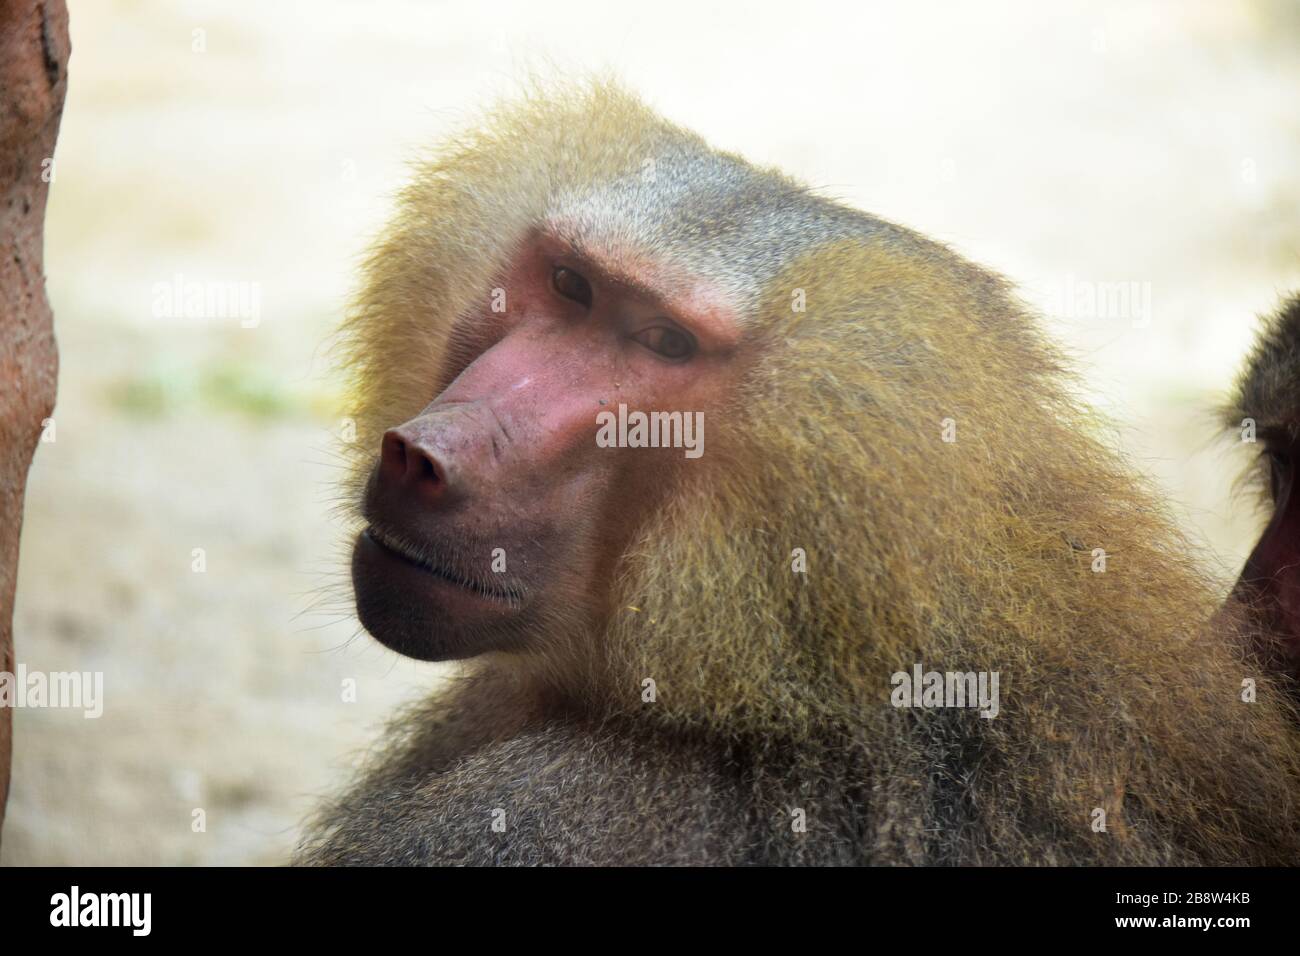 Singapore - 15 gennaio 2019 - uno sguardo intelligente della scimmia nello zoo di Singapore! Foto Stock